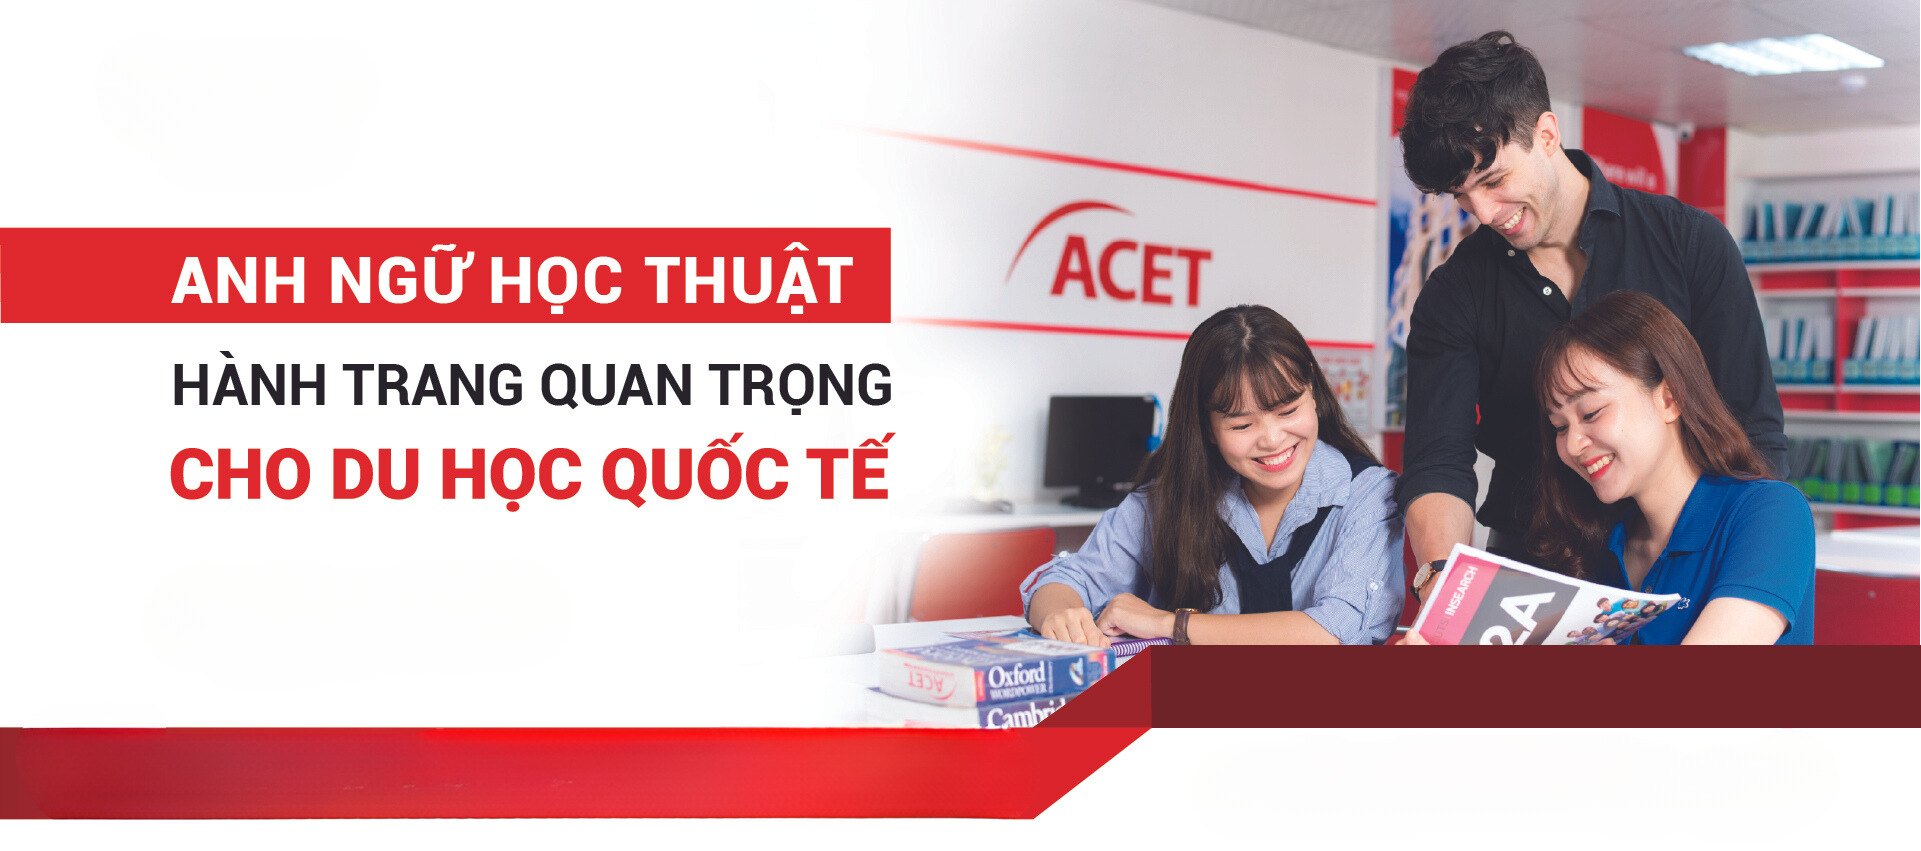 trung tâm luyện thi Toeic uy tín tại Hà Nội